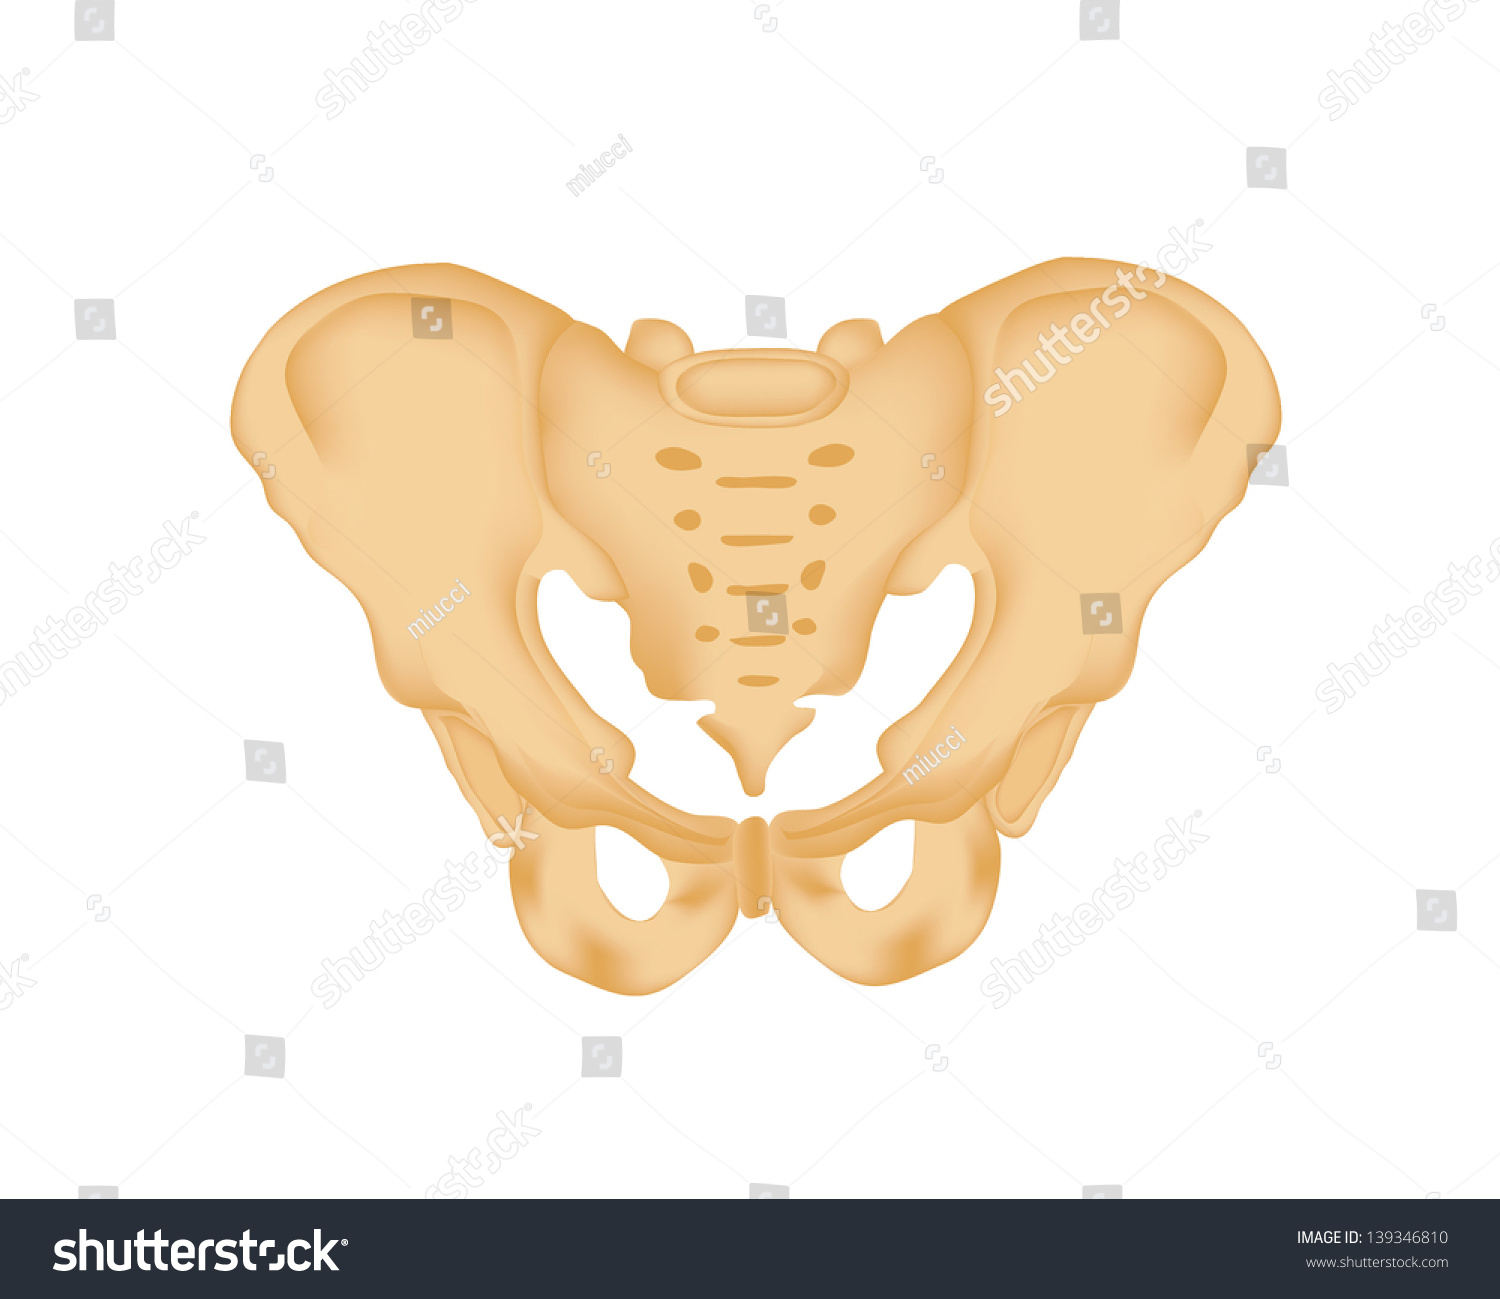 Illustration Of Human Pelvis - 139346810 : Shutterstock